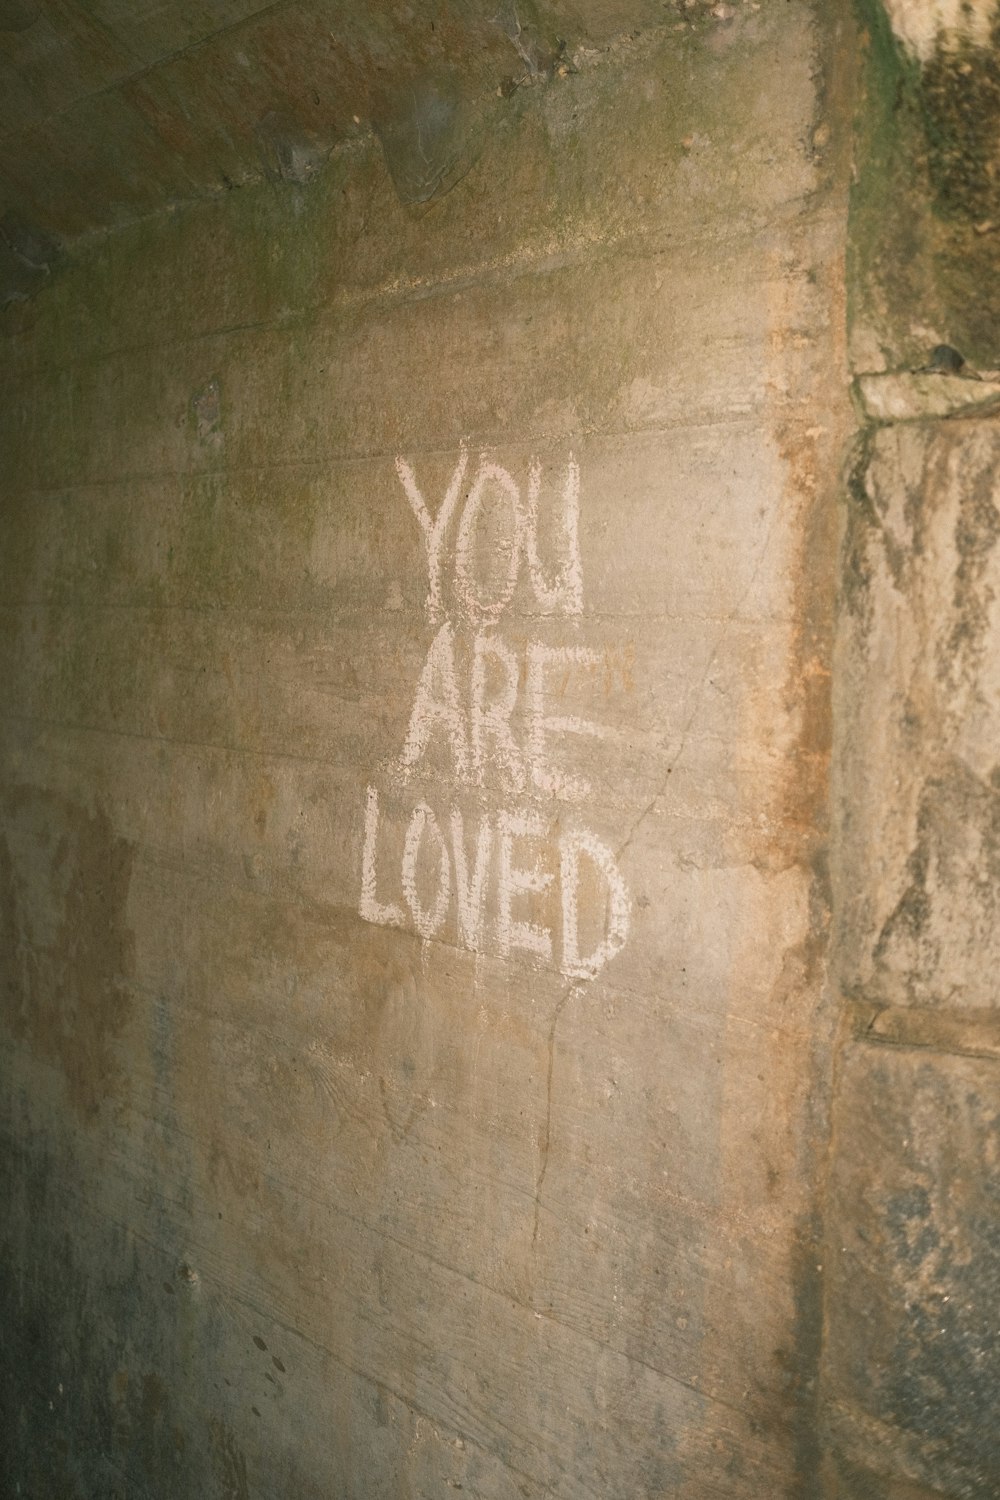 Du wirst geliebt an der Seite einer Wand geschrieben